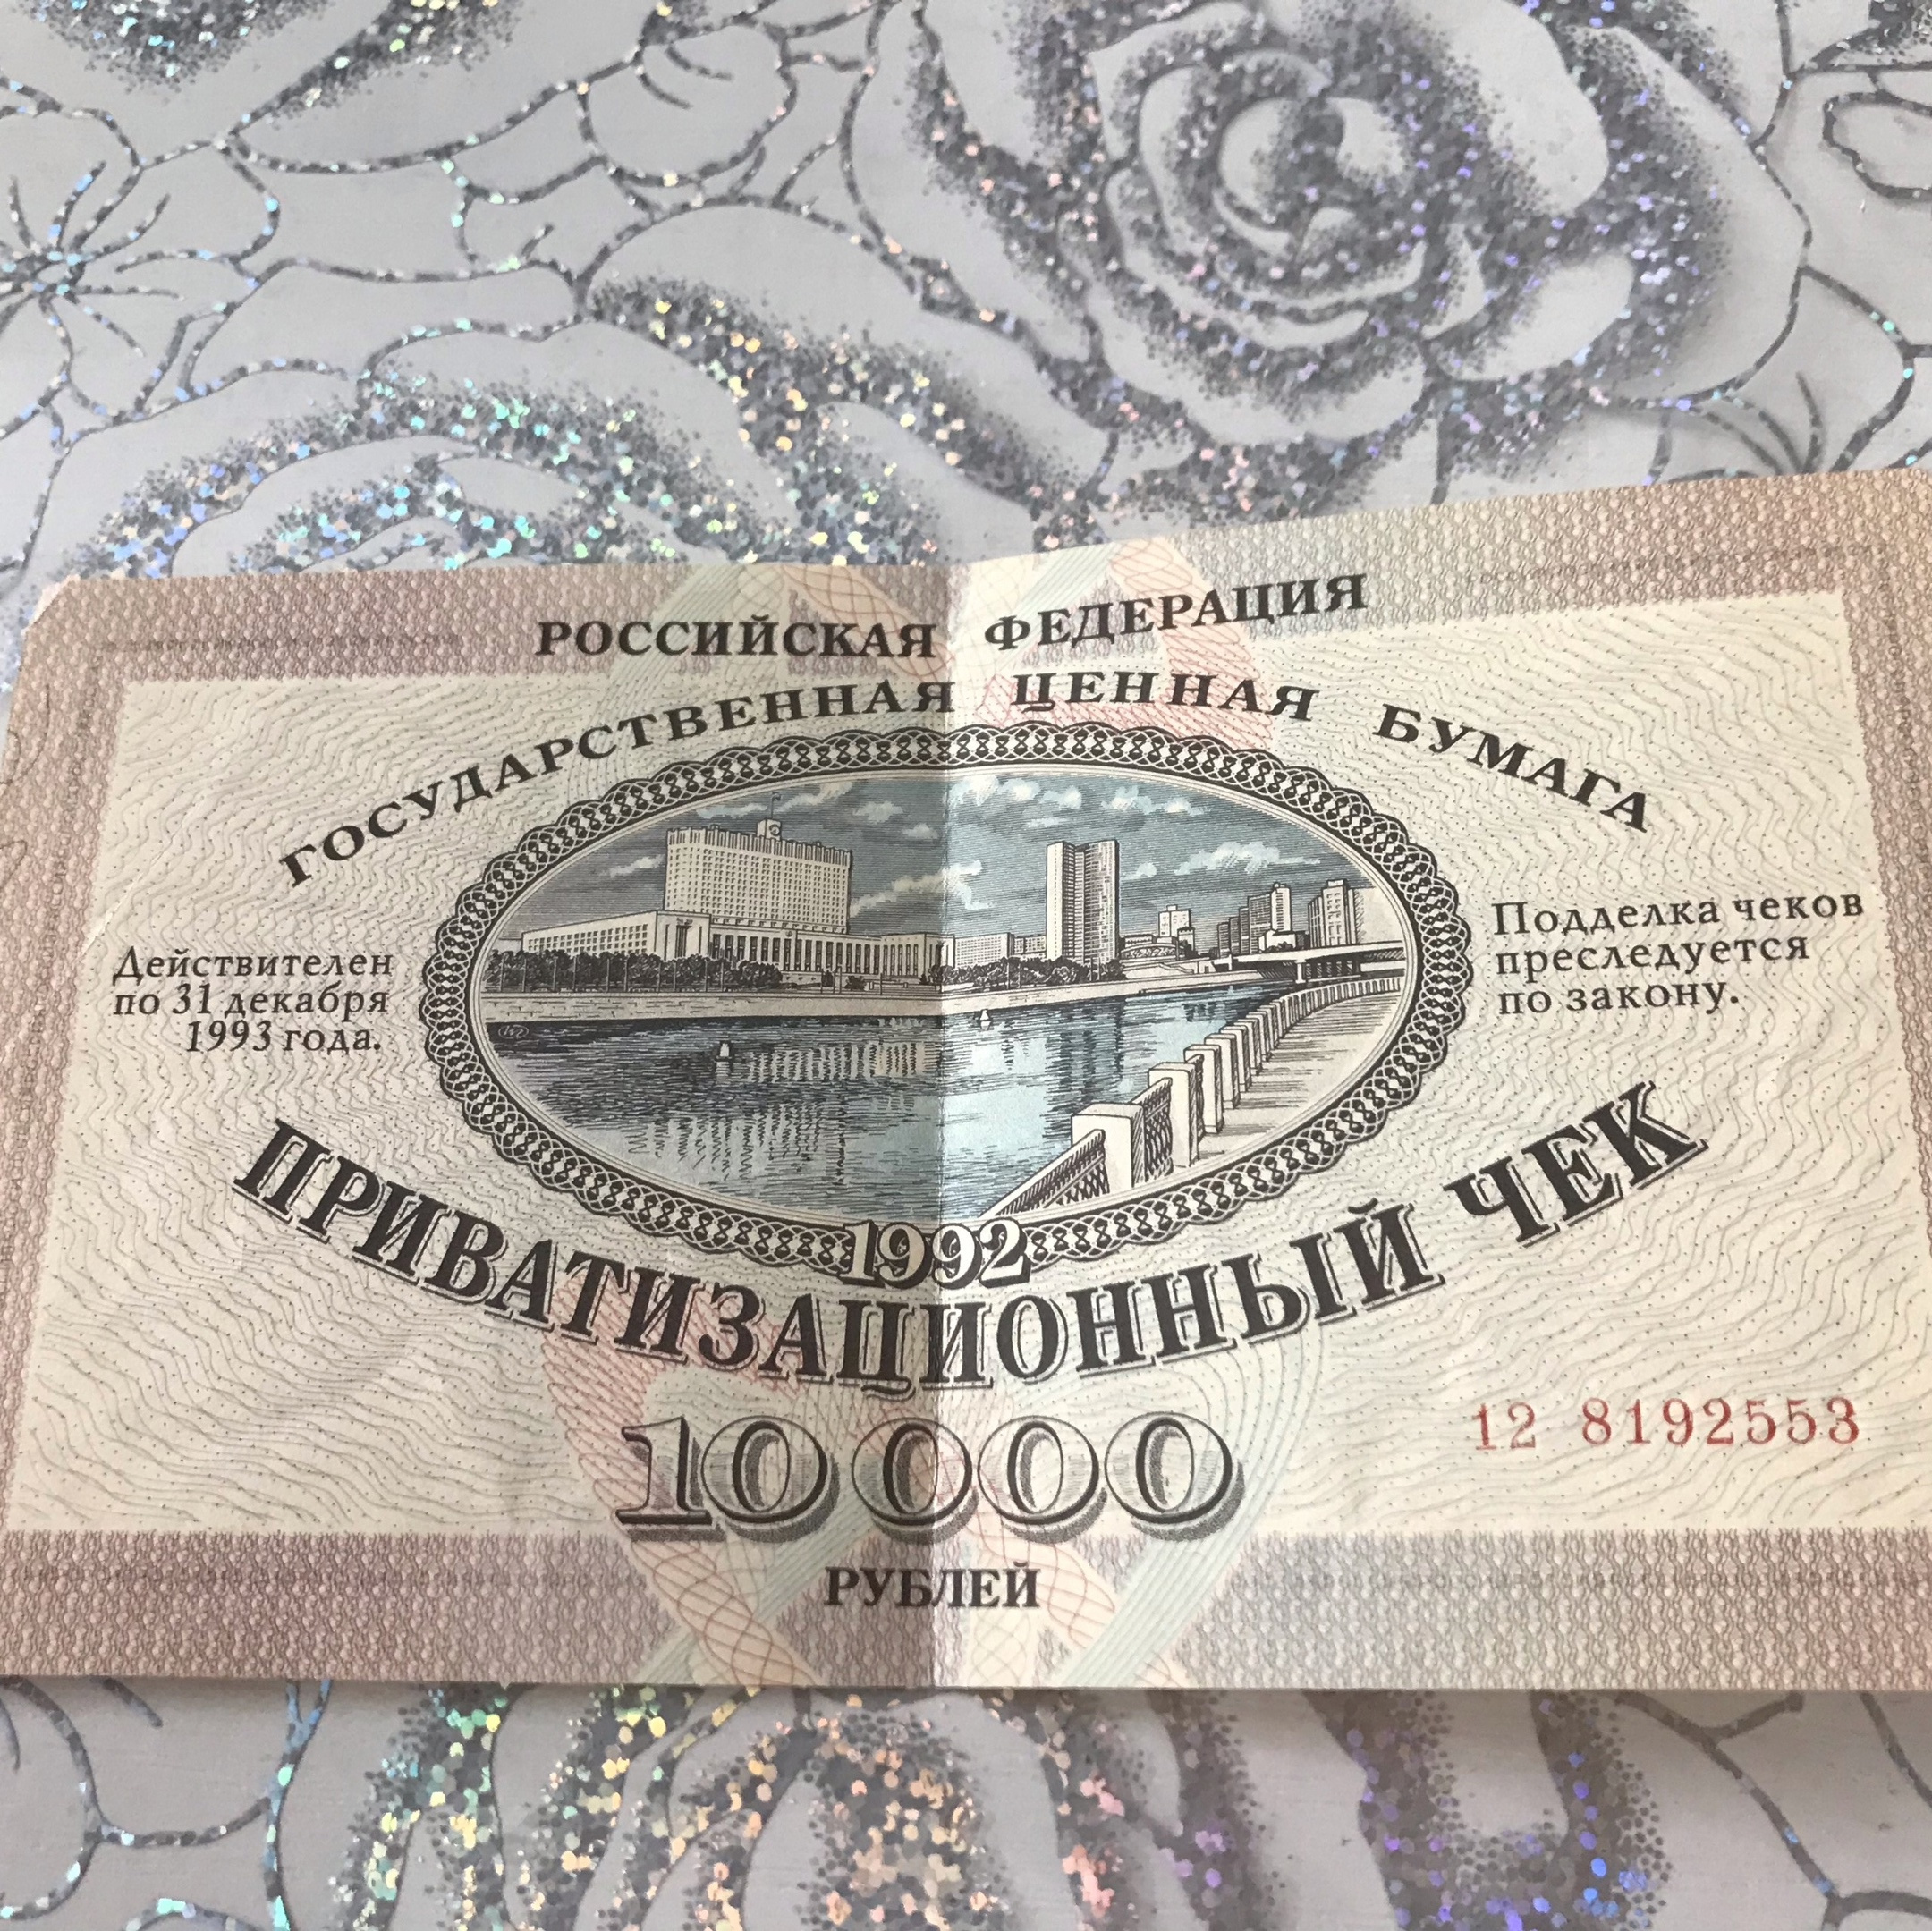 Сейчас такой раритет продают на сайтах объявлений за 1000–1500 рублей, а с красивым номером — тысяч за пятьдесят